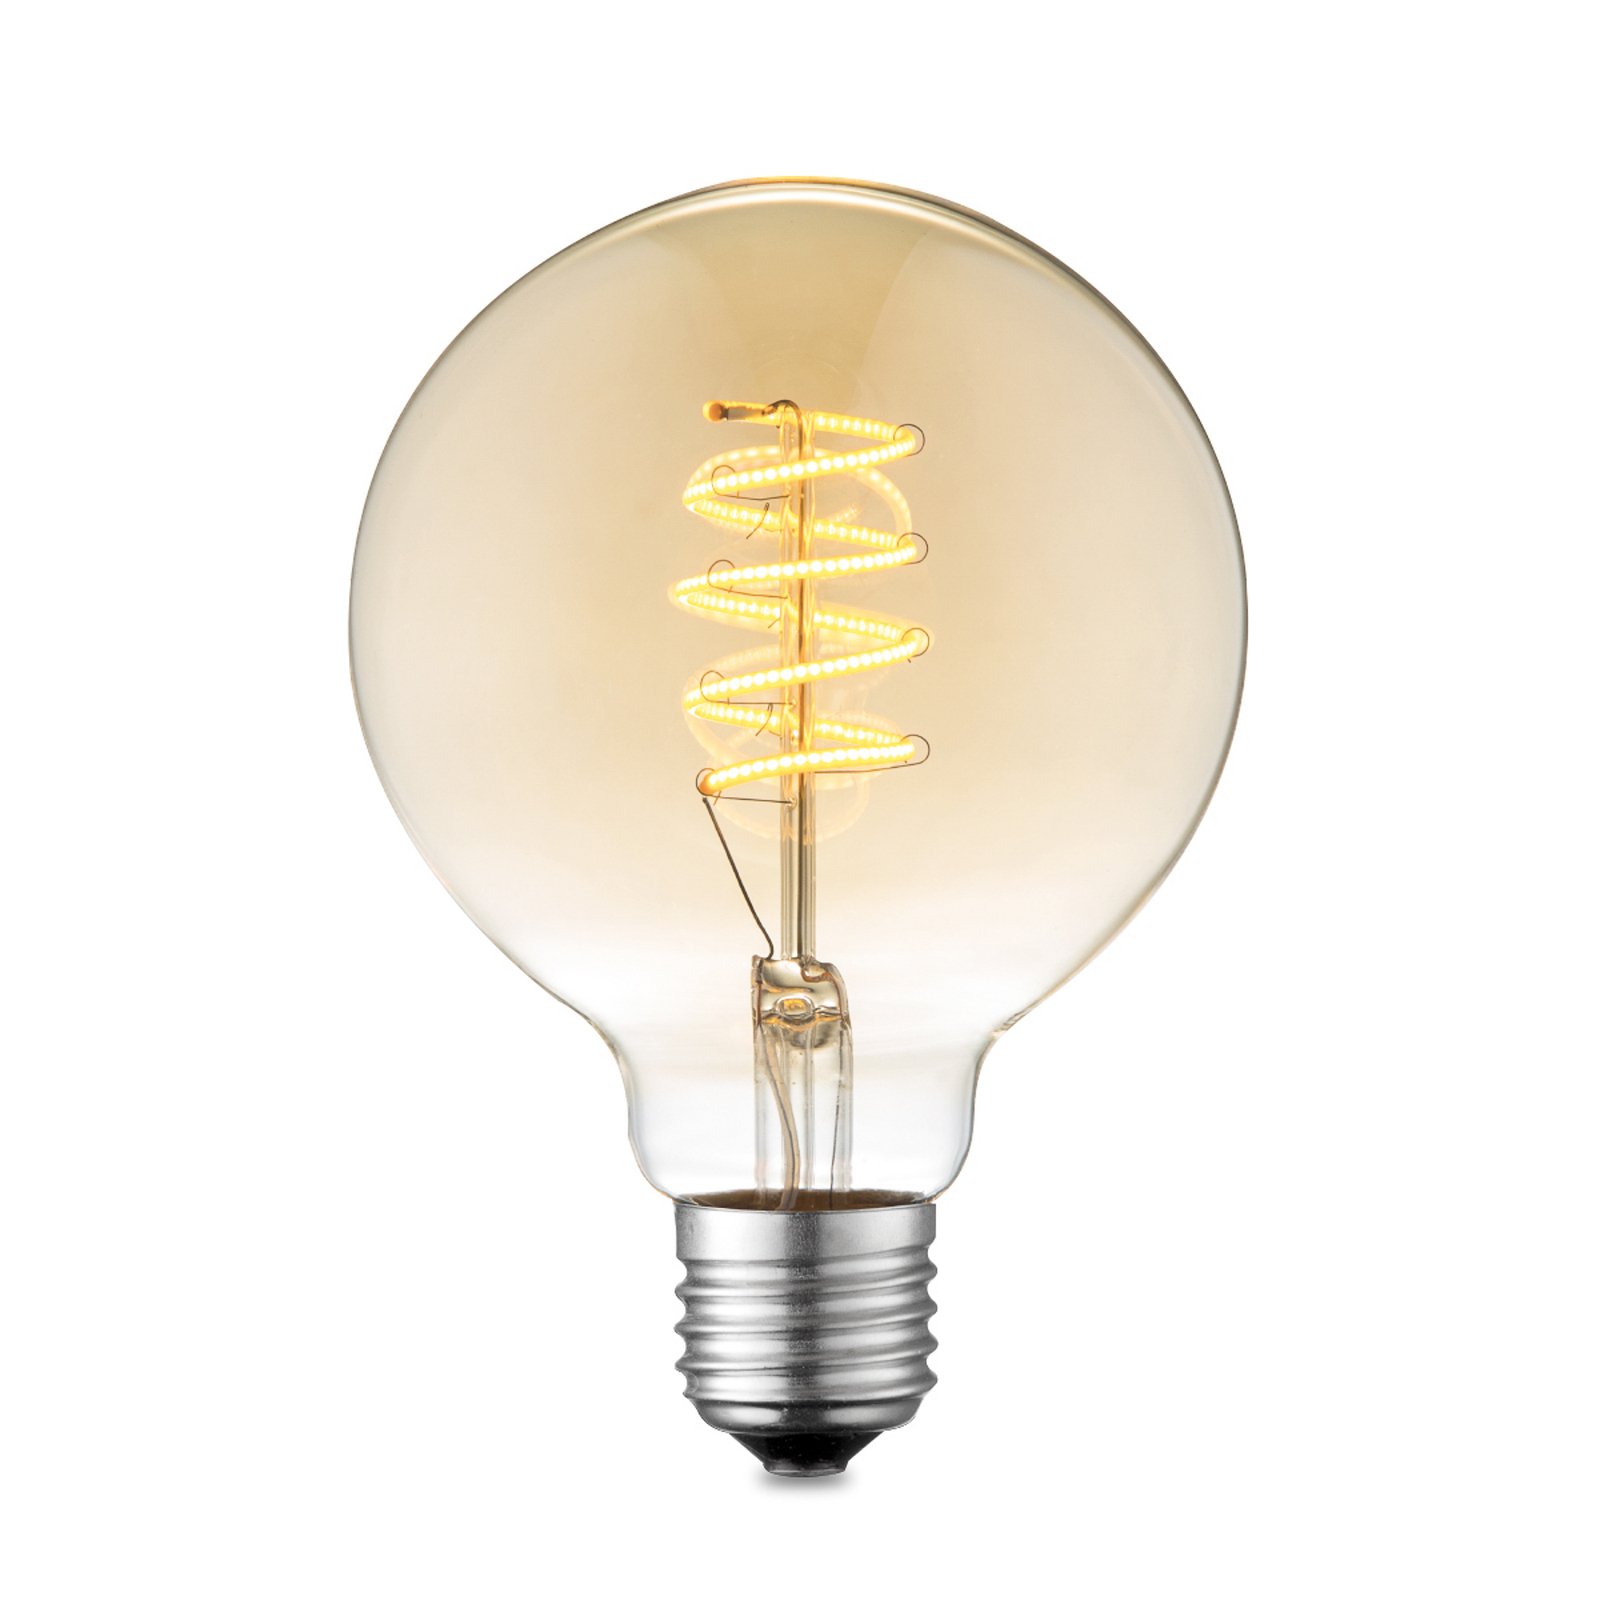 Lucande LED lamp E27 G95 4W 2.700 K dimbaar amber